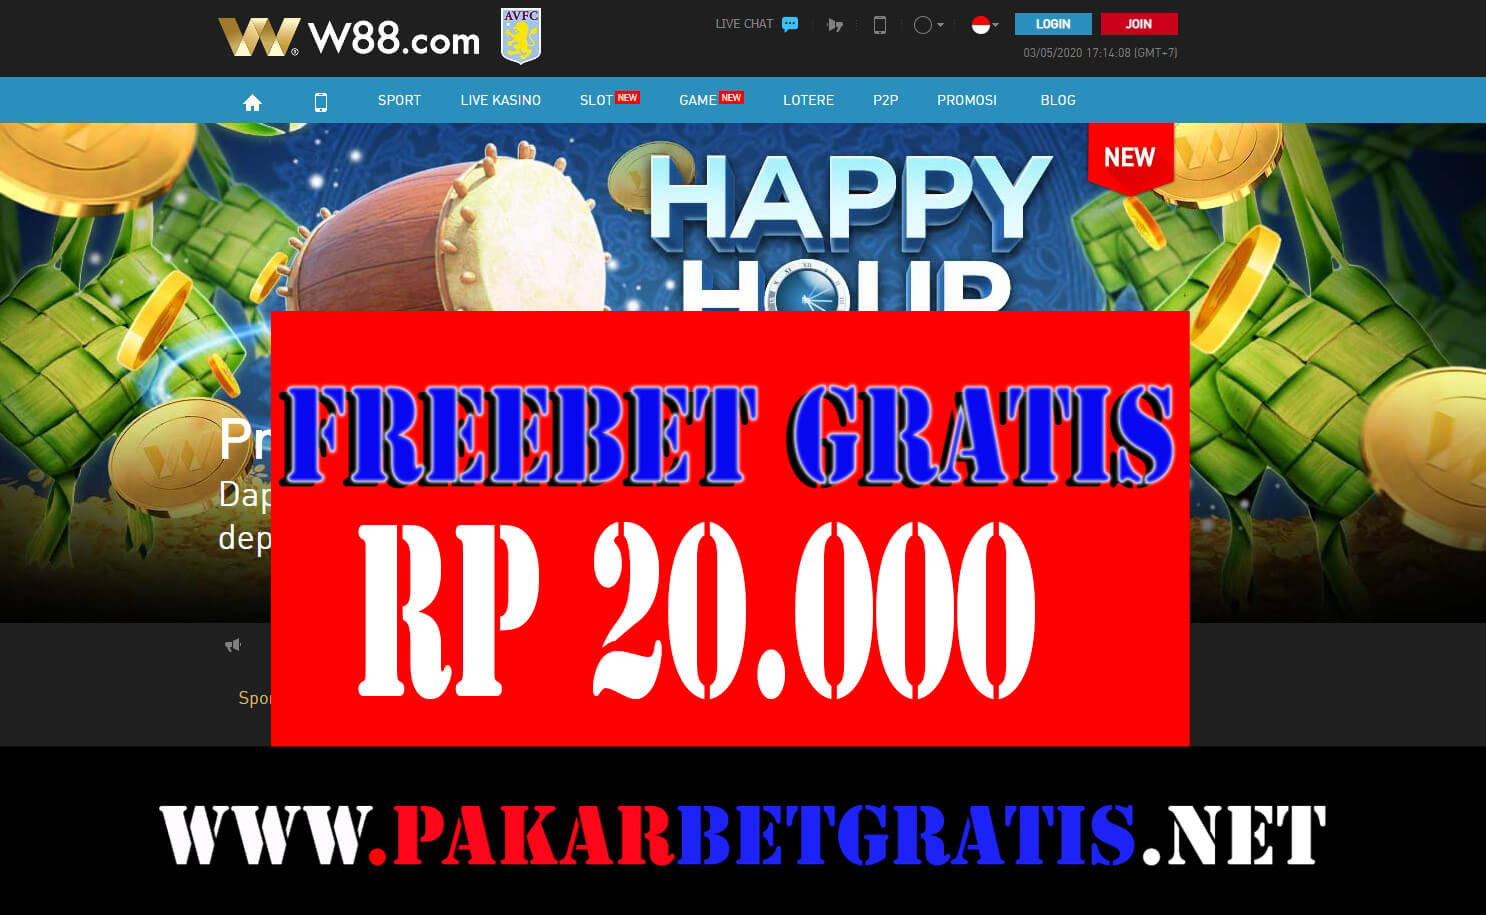 W88 Freebet gratis Rp 20.000 Tanpa deposit